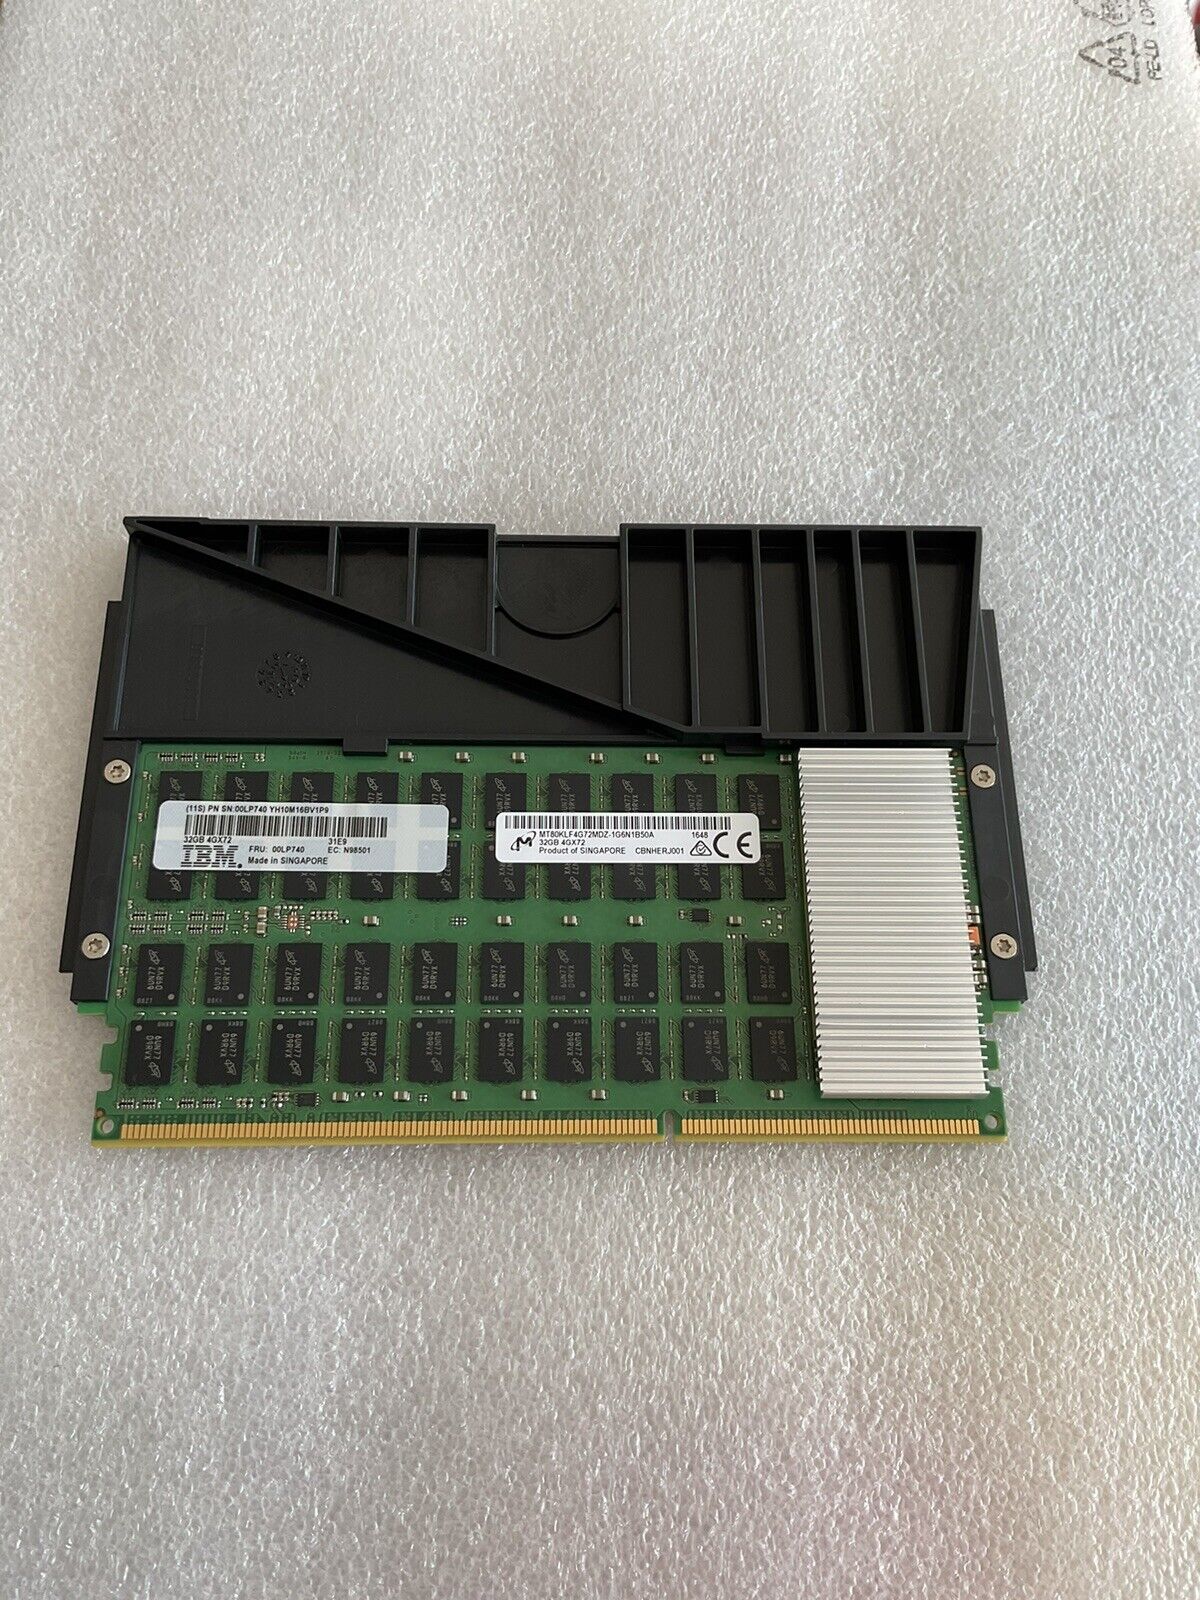 Lot of 16  IBM 00LP740 32GB DDR3 4GX72 CDIMM DRAM 1600MHz Memory